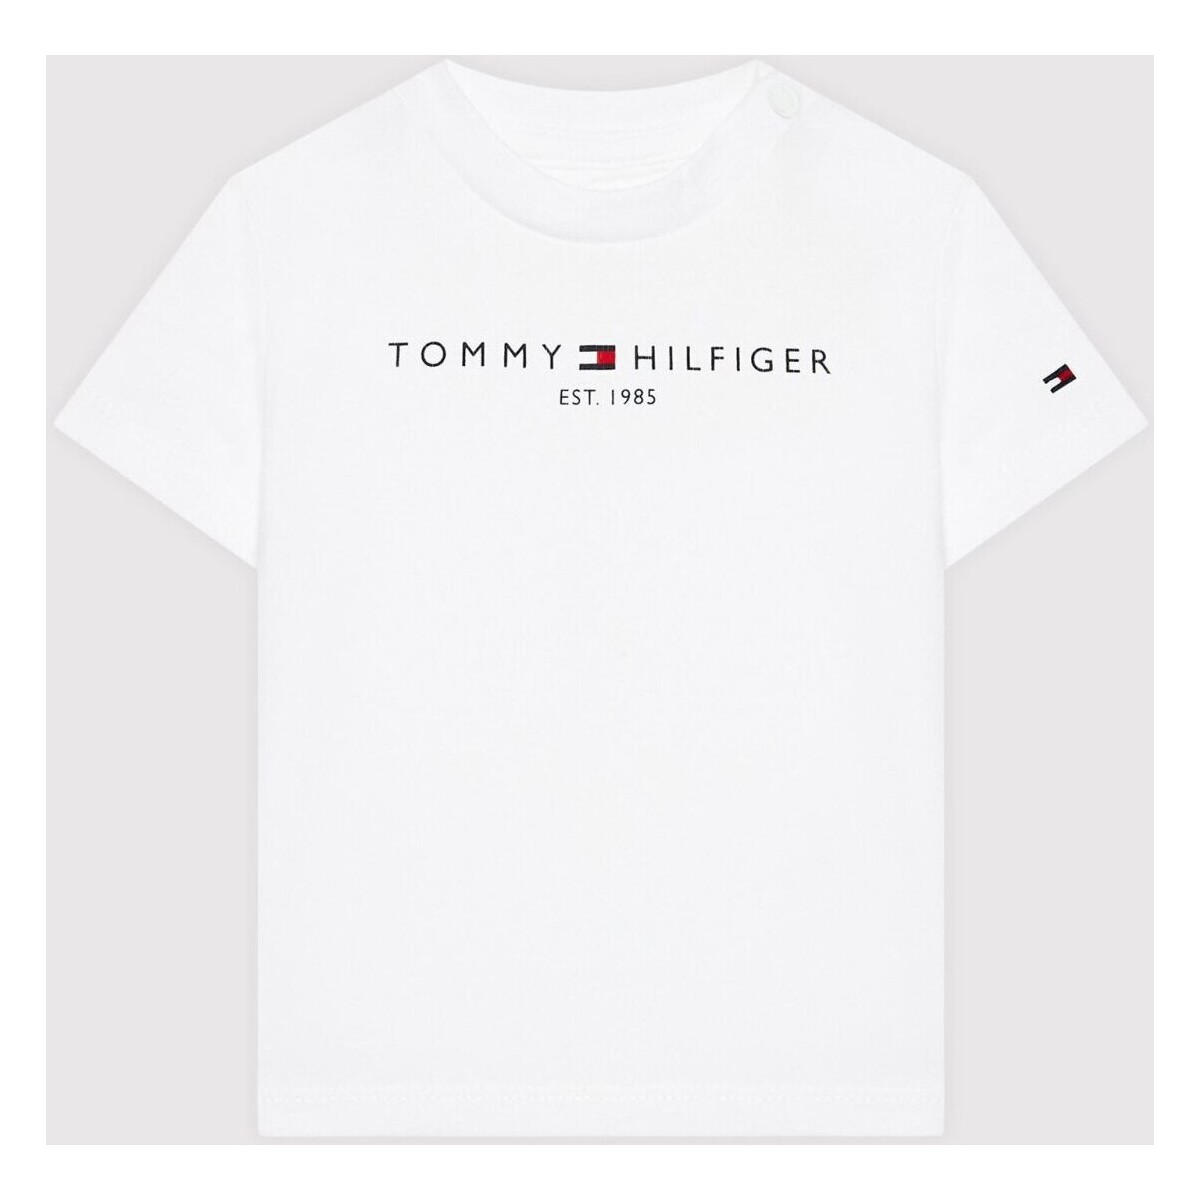 textil Barn T-shirts Tommy Hilfiger KN0KN01487 Vit